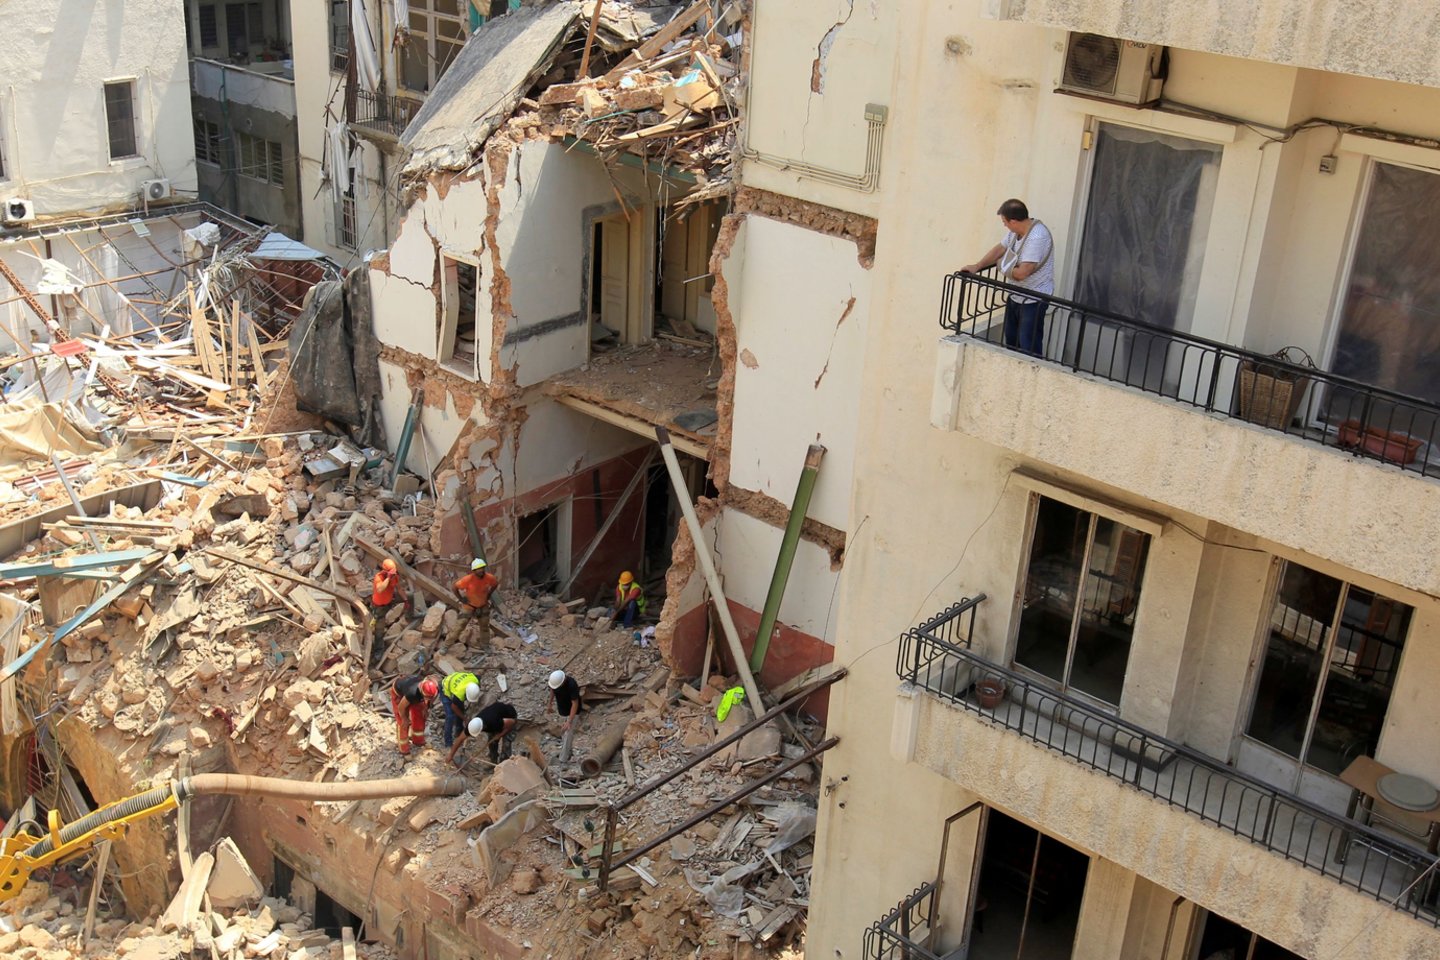  Libane gelbėtojų komandos penktadienį vėl dirbo prieš mėnesį įvykusio didžiulio sprogimo vietoje Beirute ir vieno namo griuvėsiuose, kur buvo užfiksuotas pulsas, ieškojo galimai gyvo žmogaus.  <br> Reuters/Scanpix nuotr.